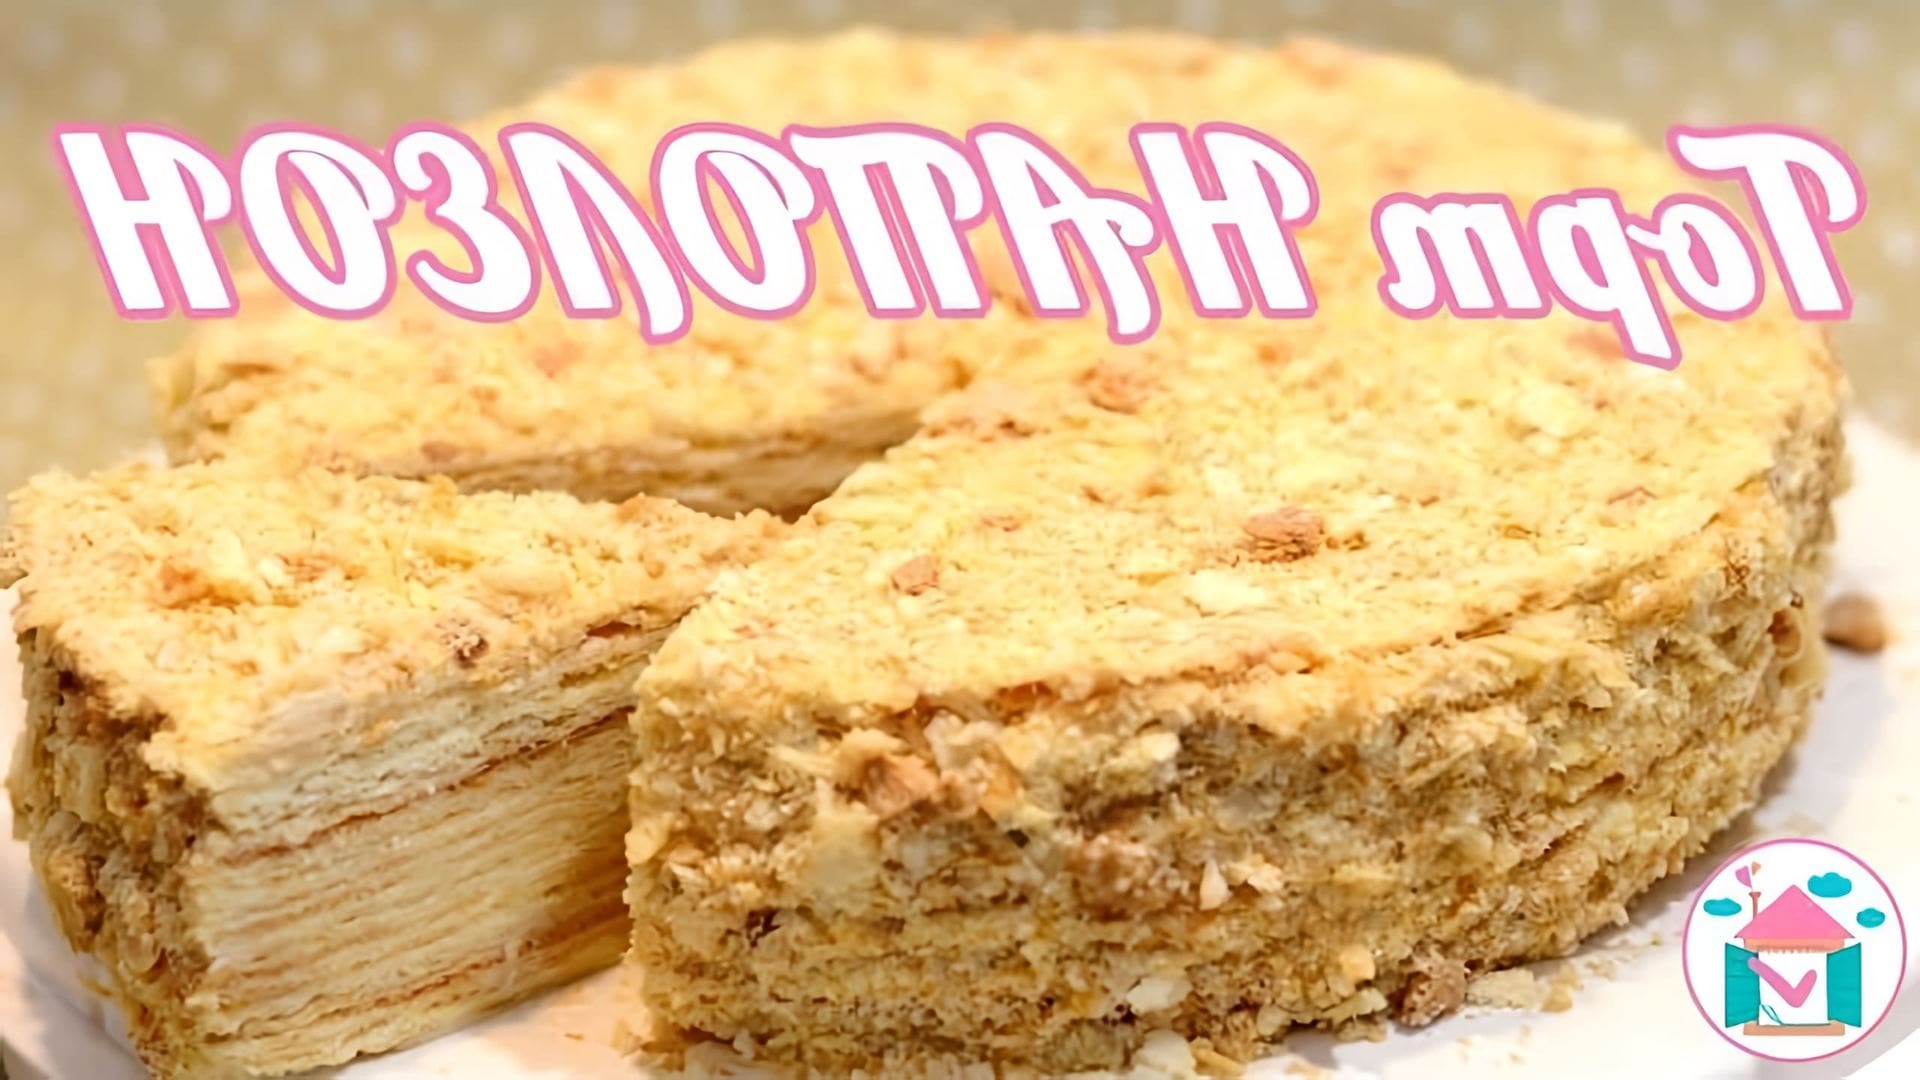 В этом видео представлен рецепт торта Наполеон с заварным кремом